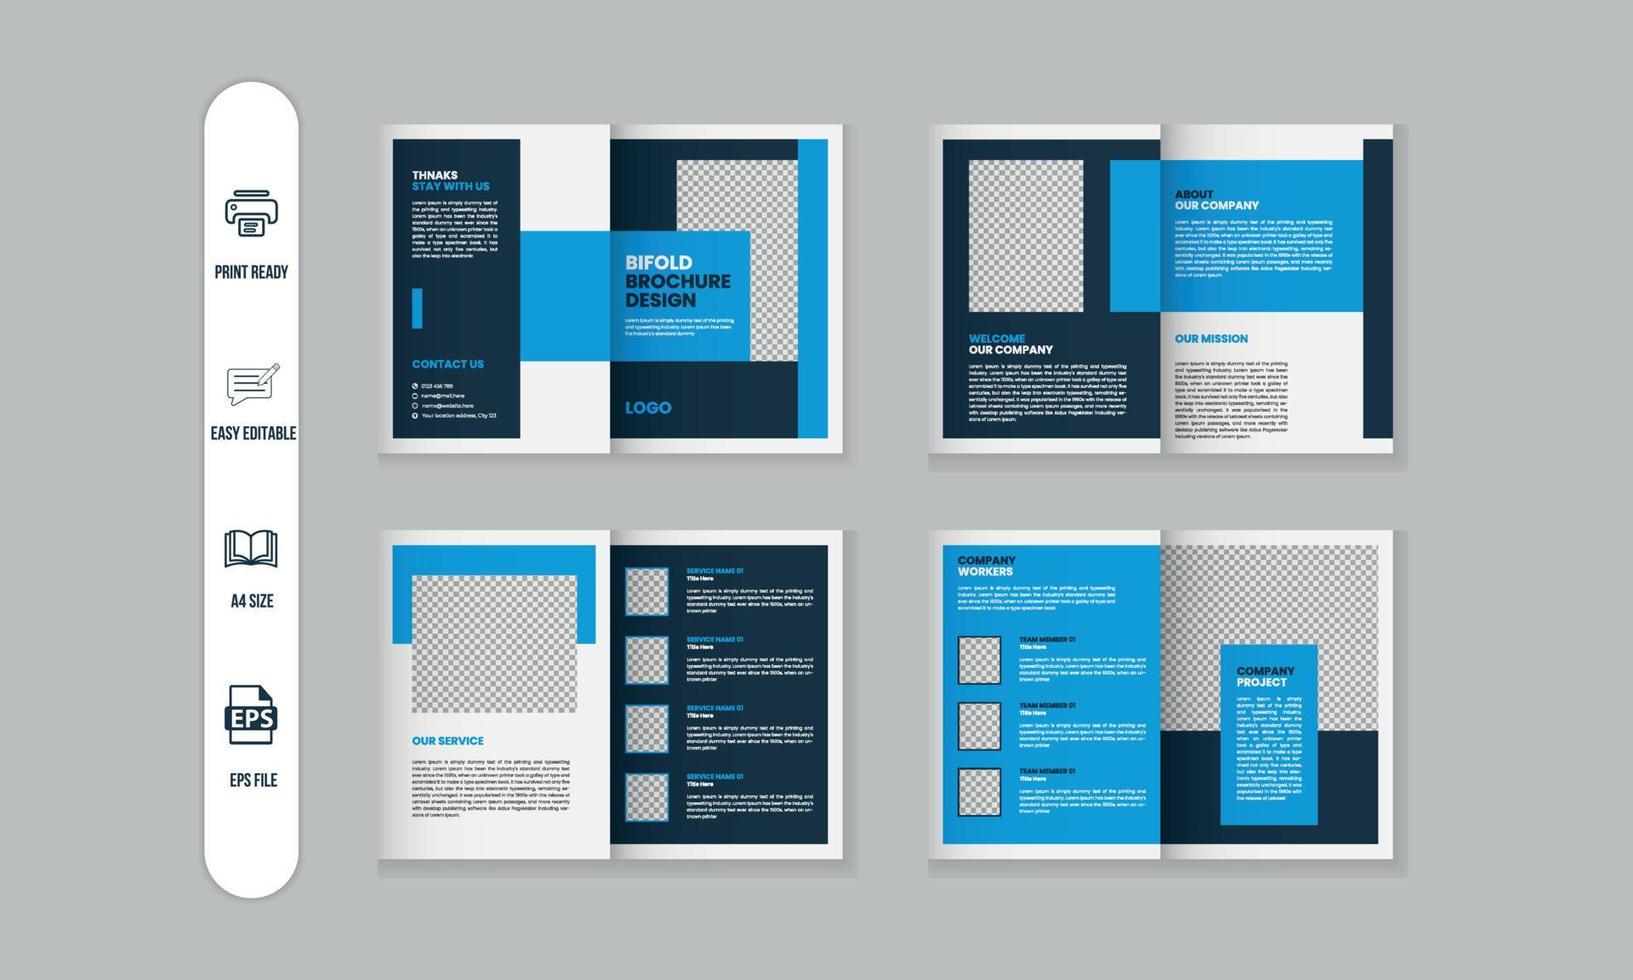 8 paginas corporativo moderno folleto y empresa perfil, revista, portafolio modelo diseño vector